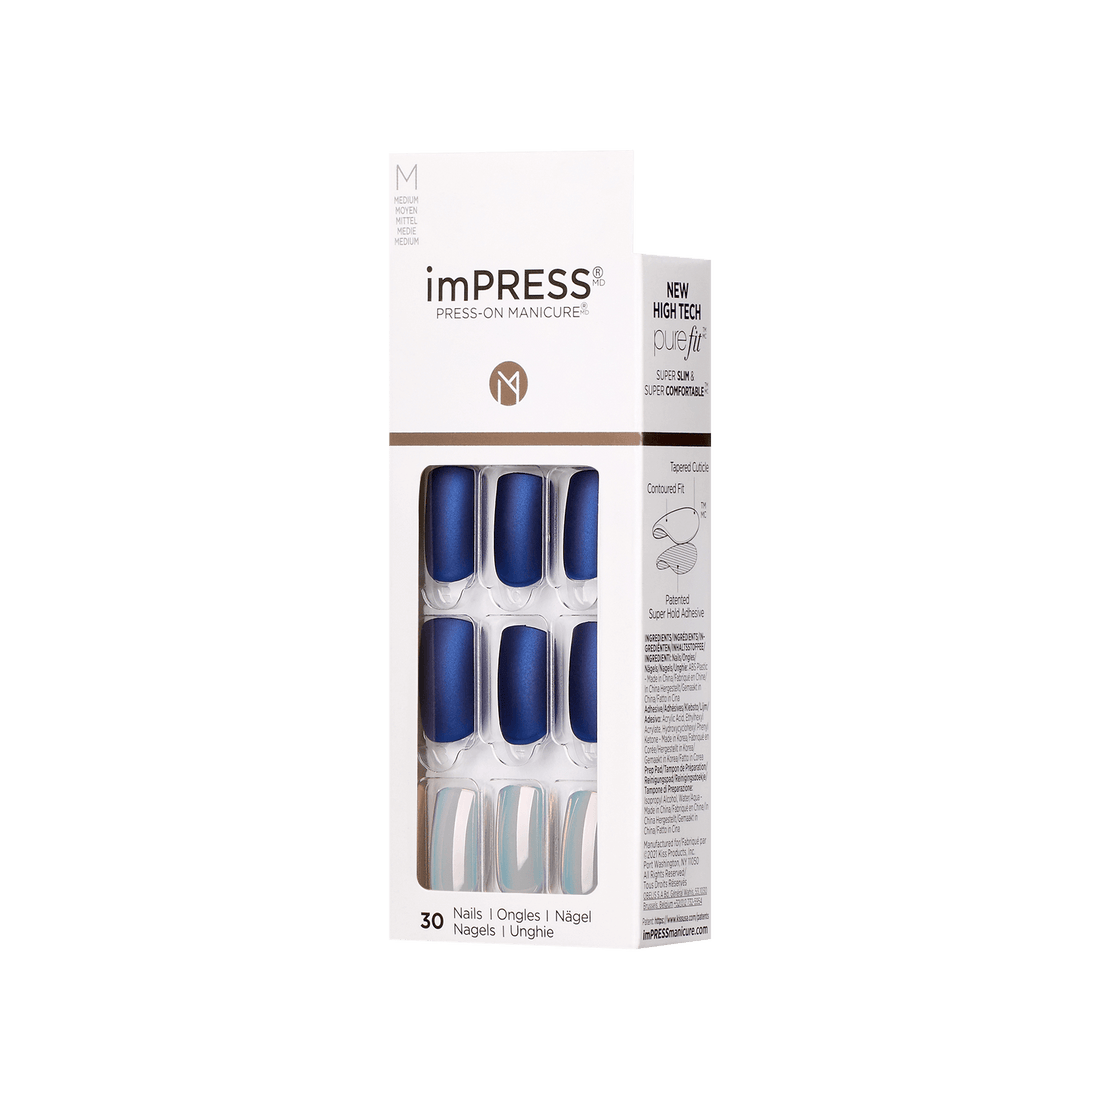 imPRESS Press-On Nails, No Glue Needed, Daydream, Vícebarevná, Medium Zaoblený, 30 ks